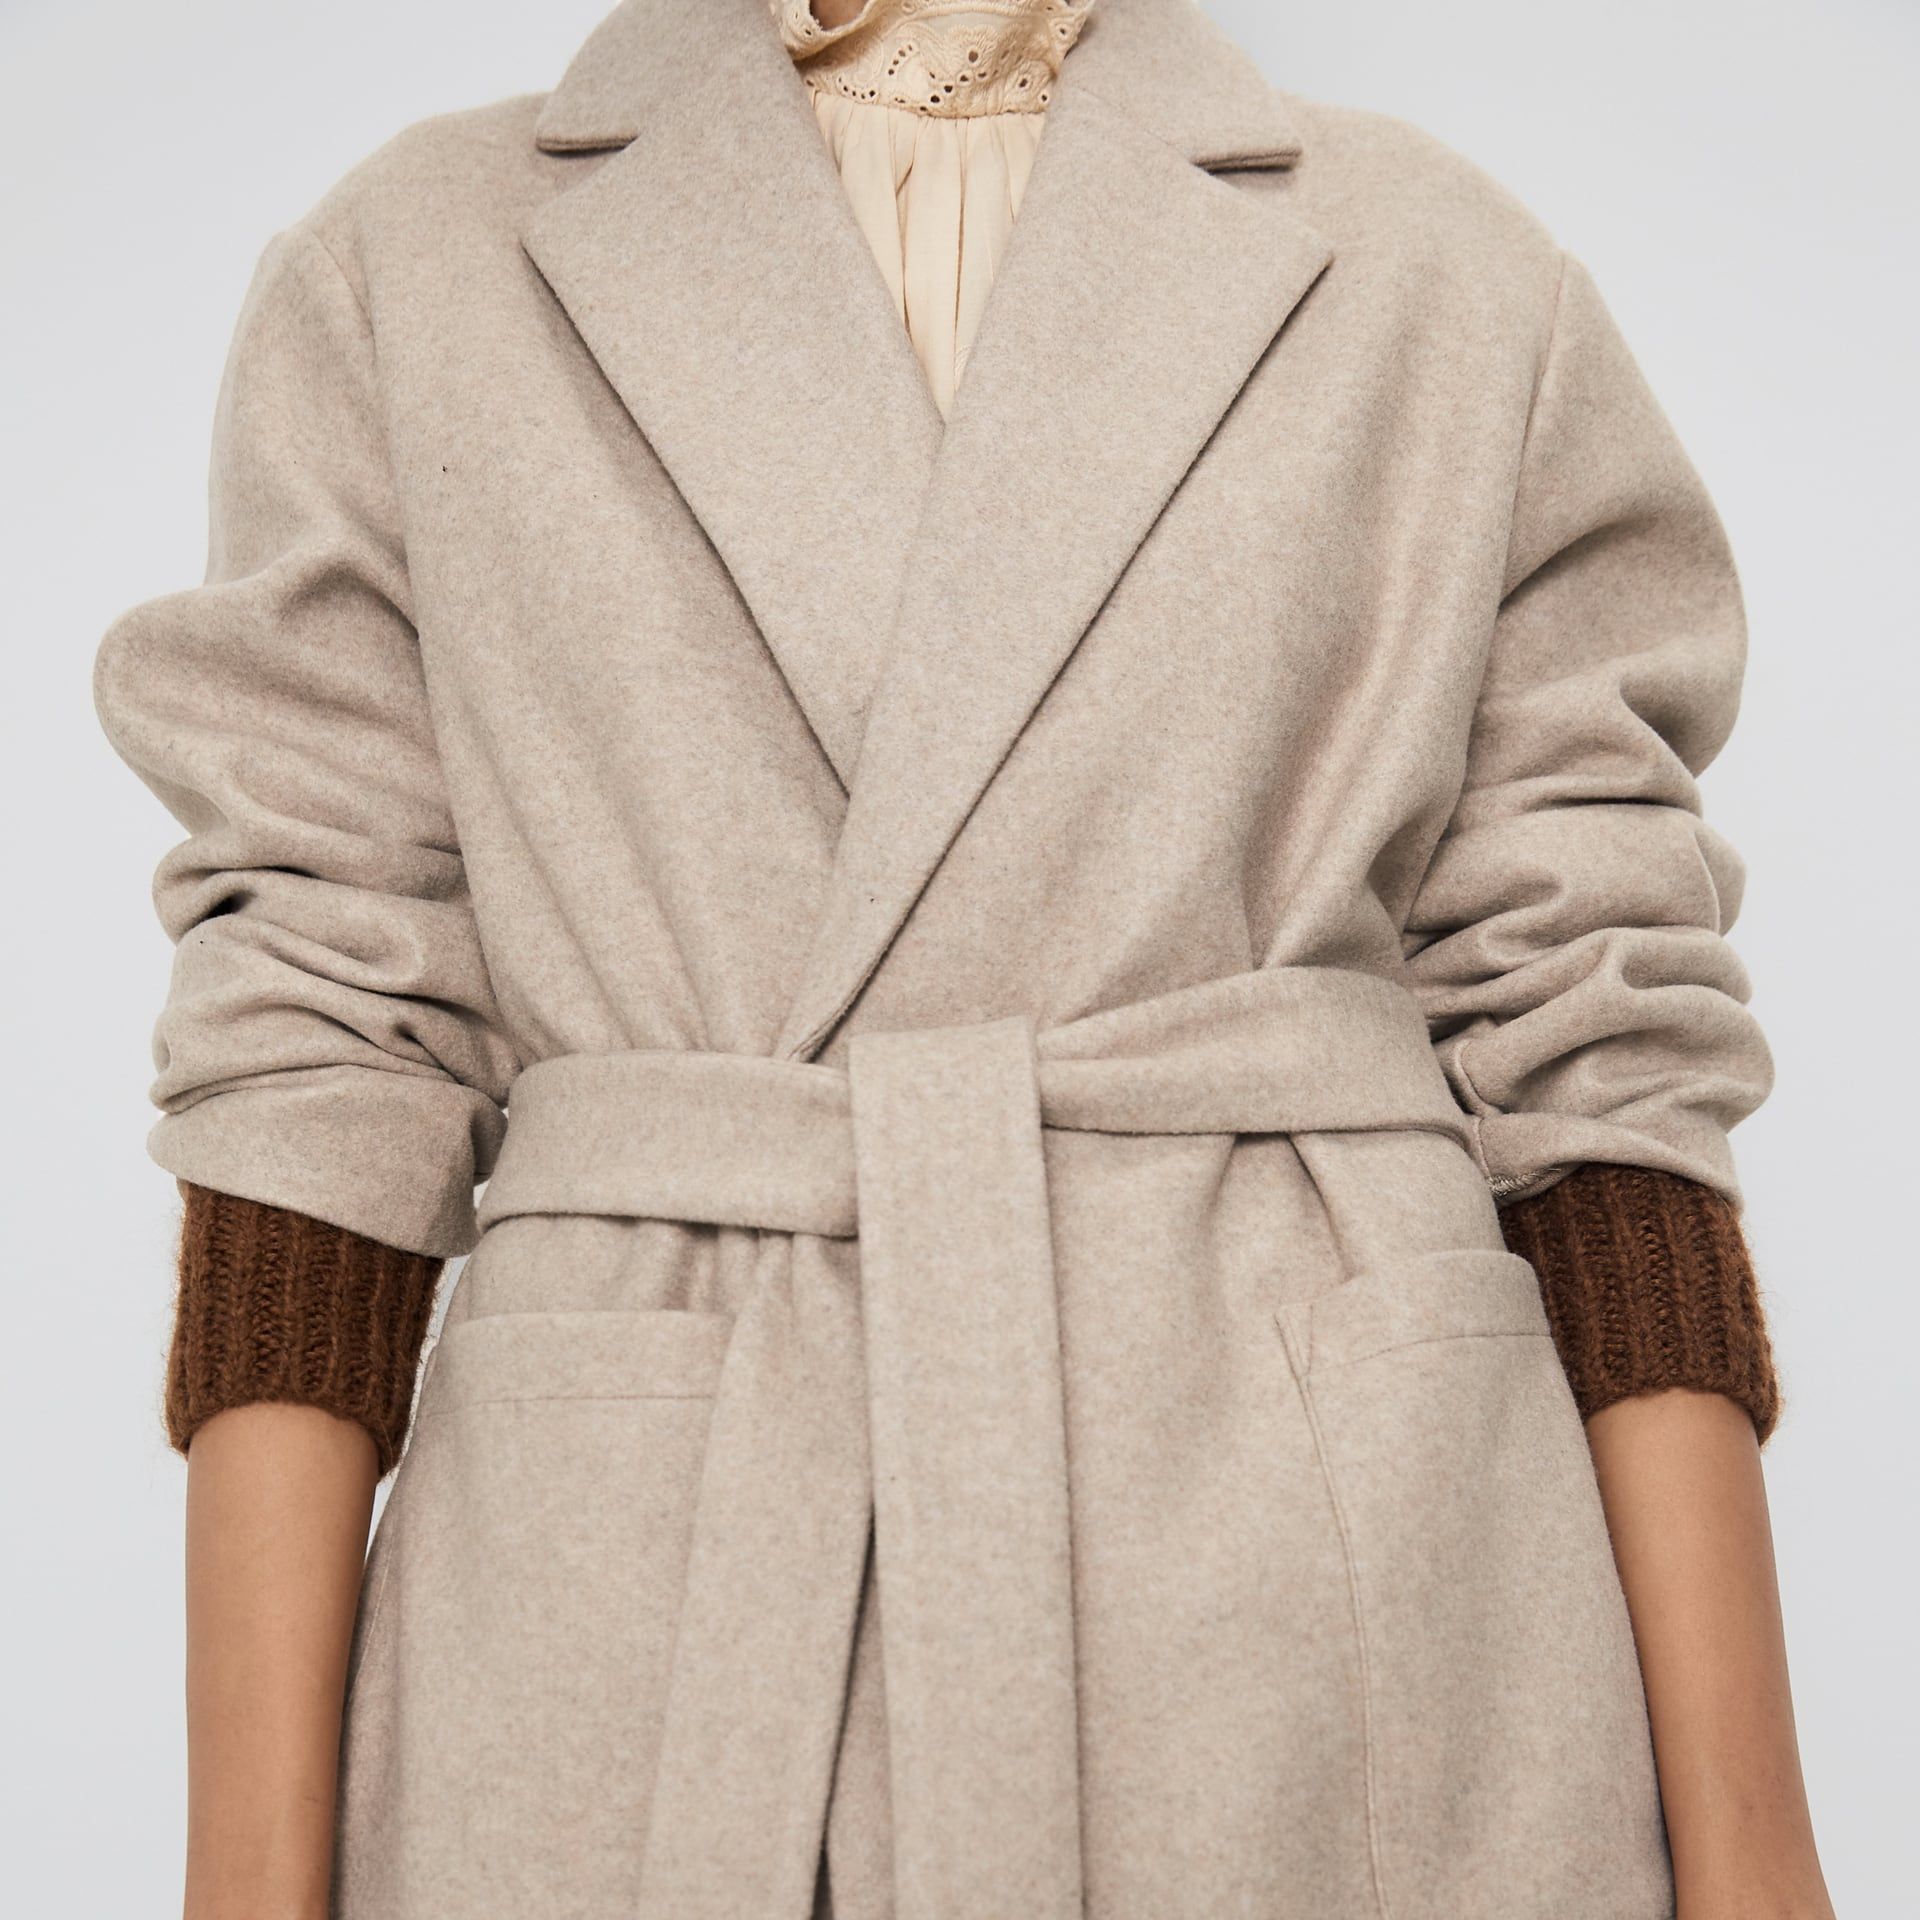 El abrigo camel Zara de tendencia de otoño 2019 más barato